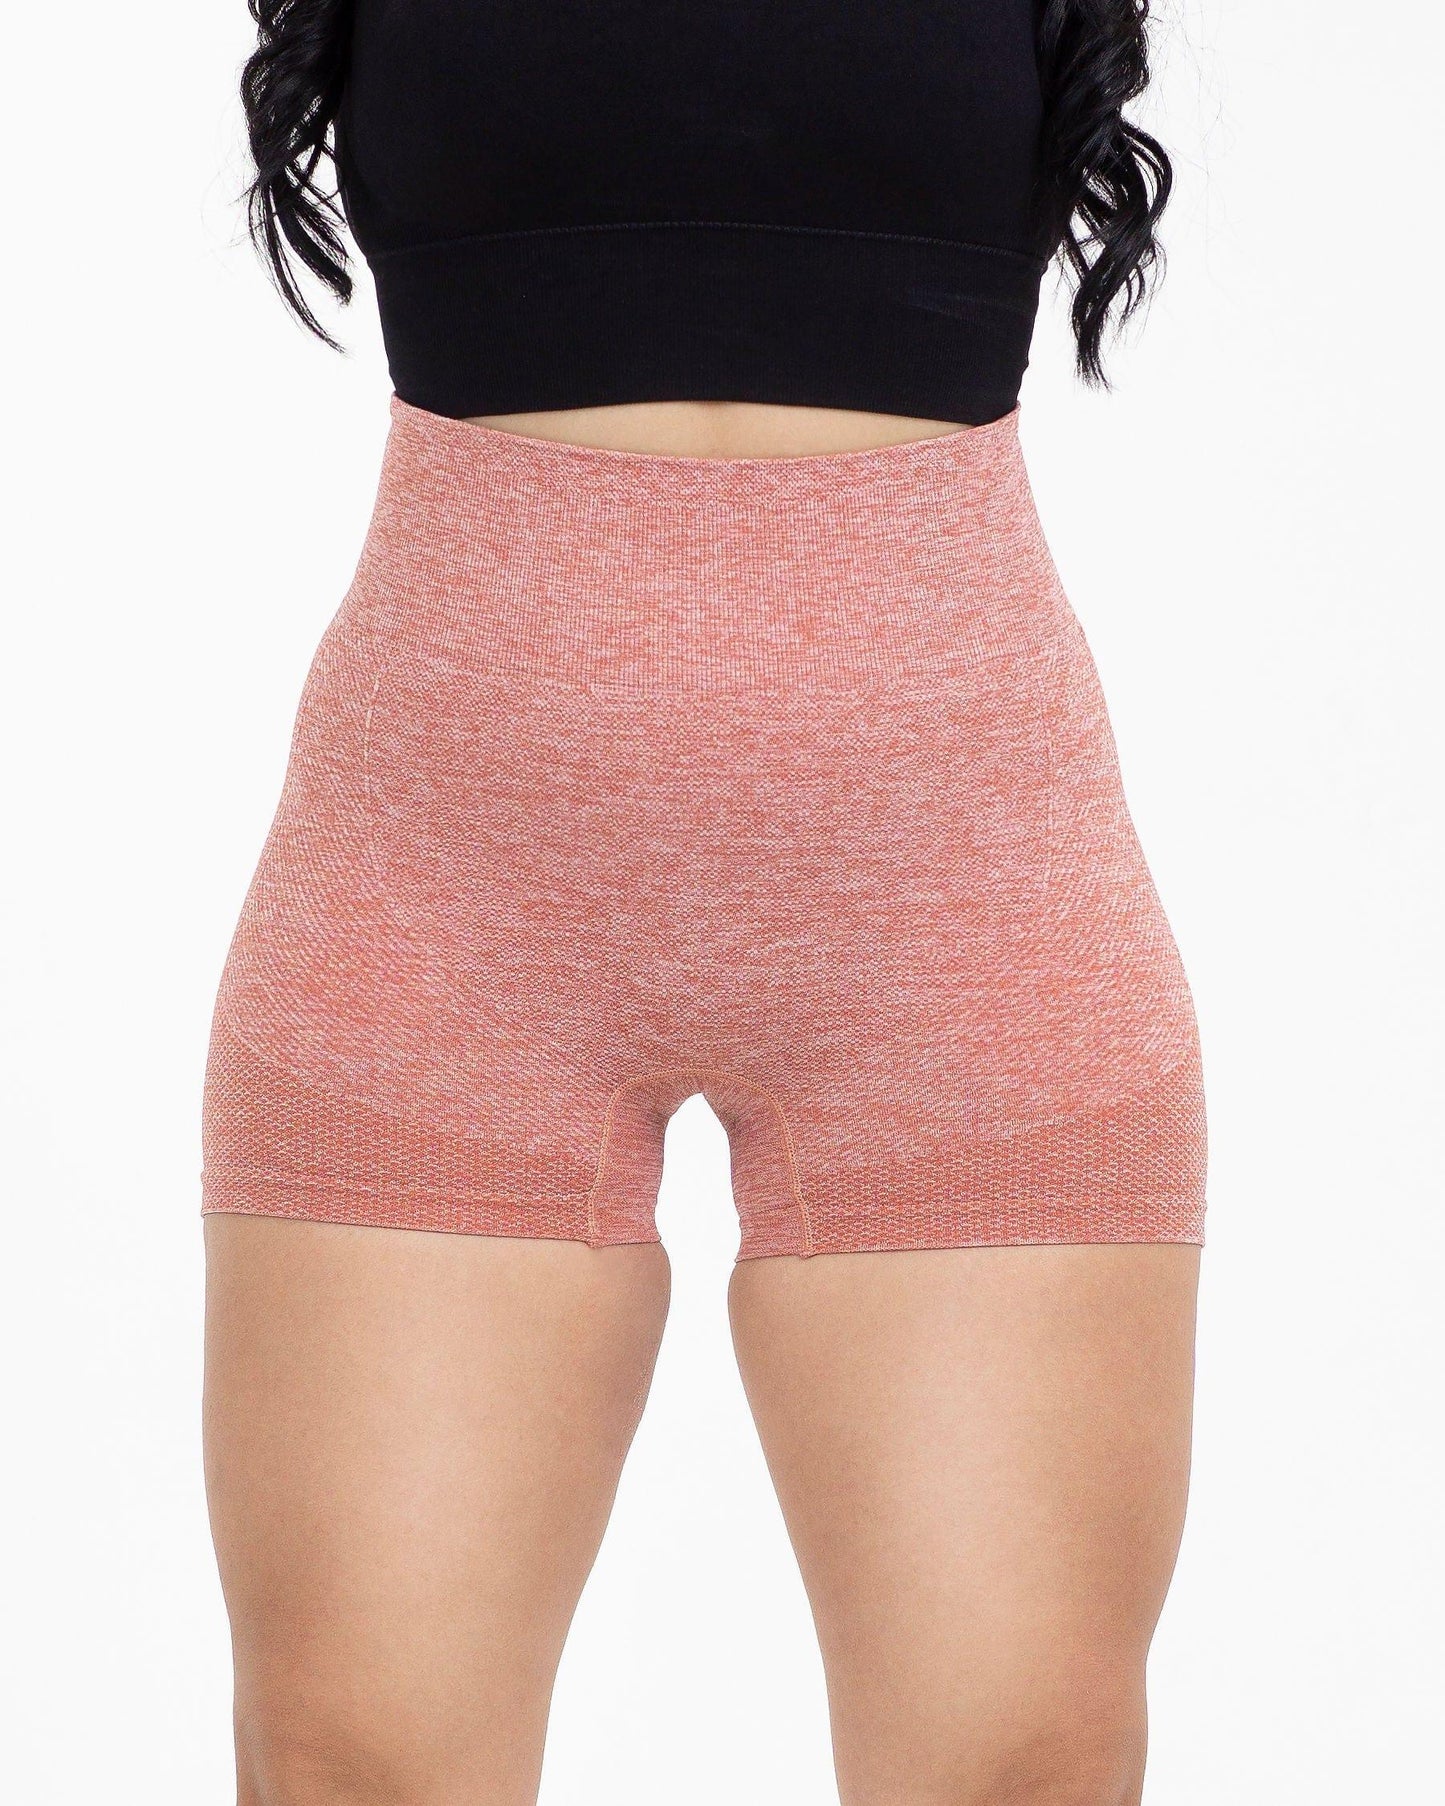 Cherry scrunch butt shorts - Bia Vibe